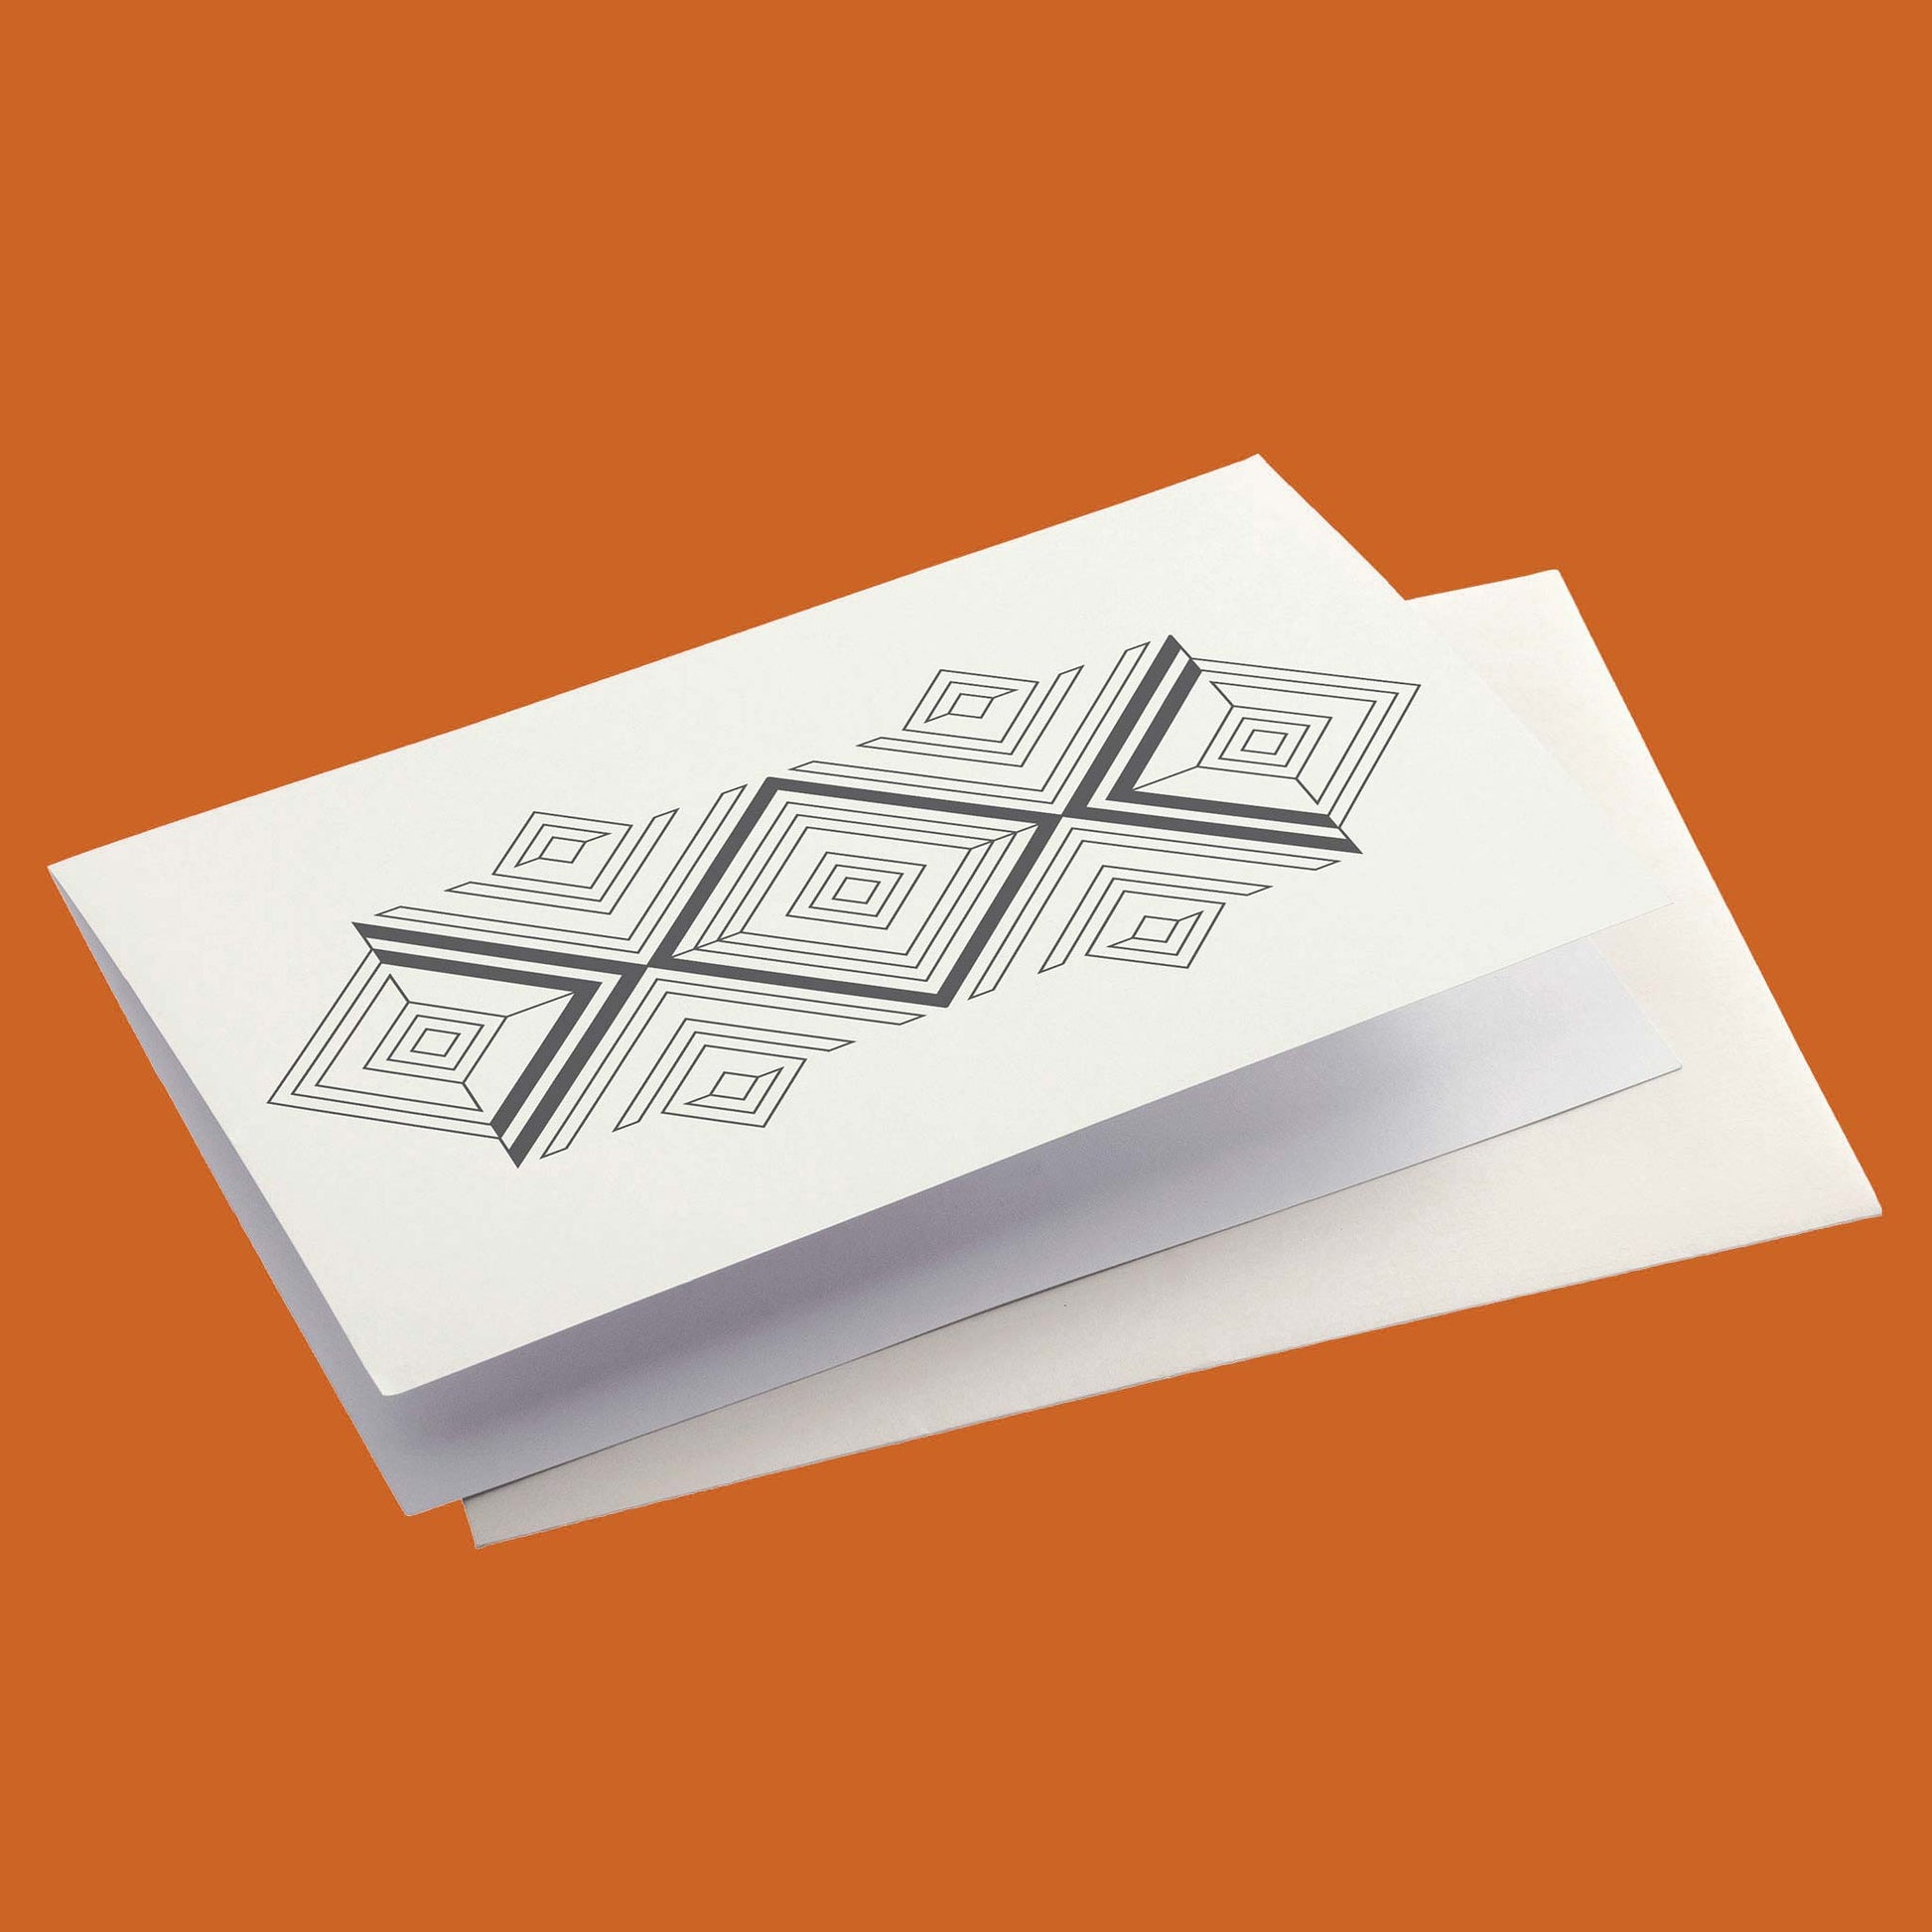 Productafbeelding, foto ontwerp 5 uit de set, gepresenteerd met envelop op een oranje/bruine achtergrond